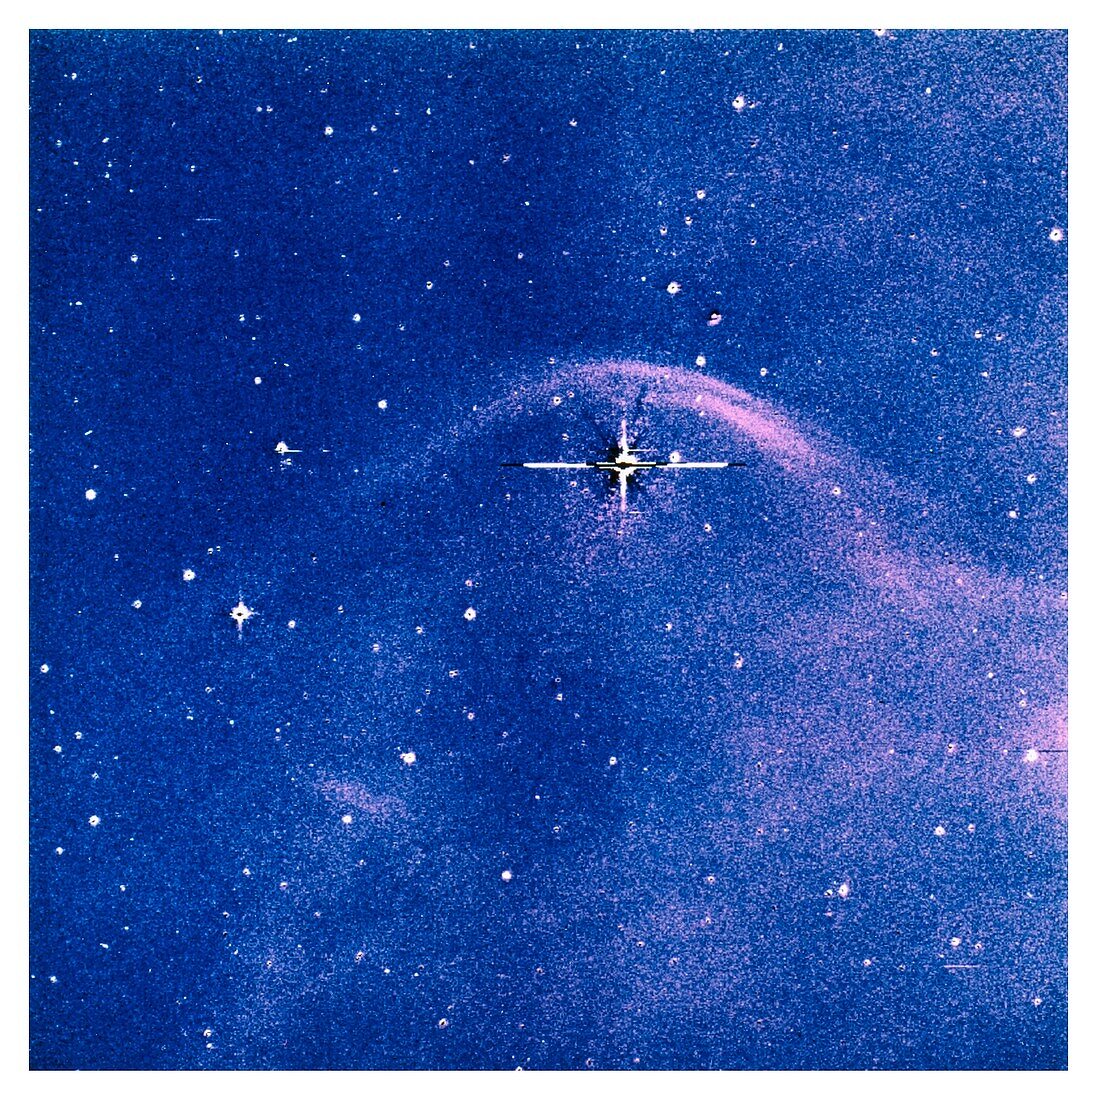 Bow shock around star Vela X-1, optical image